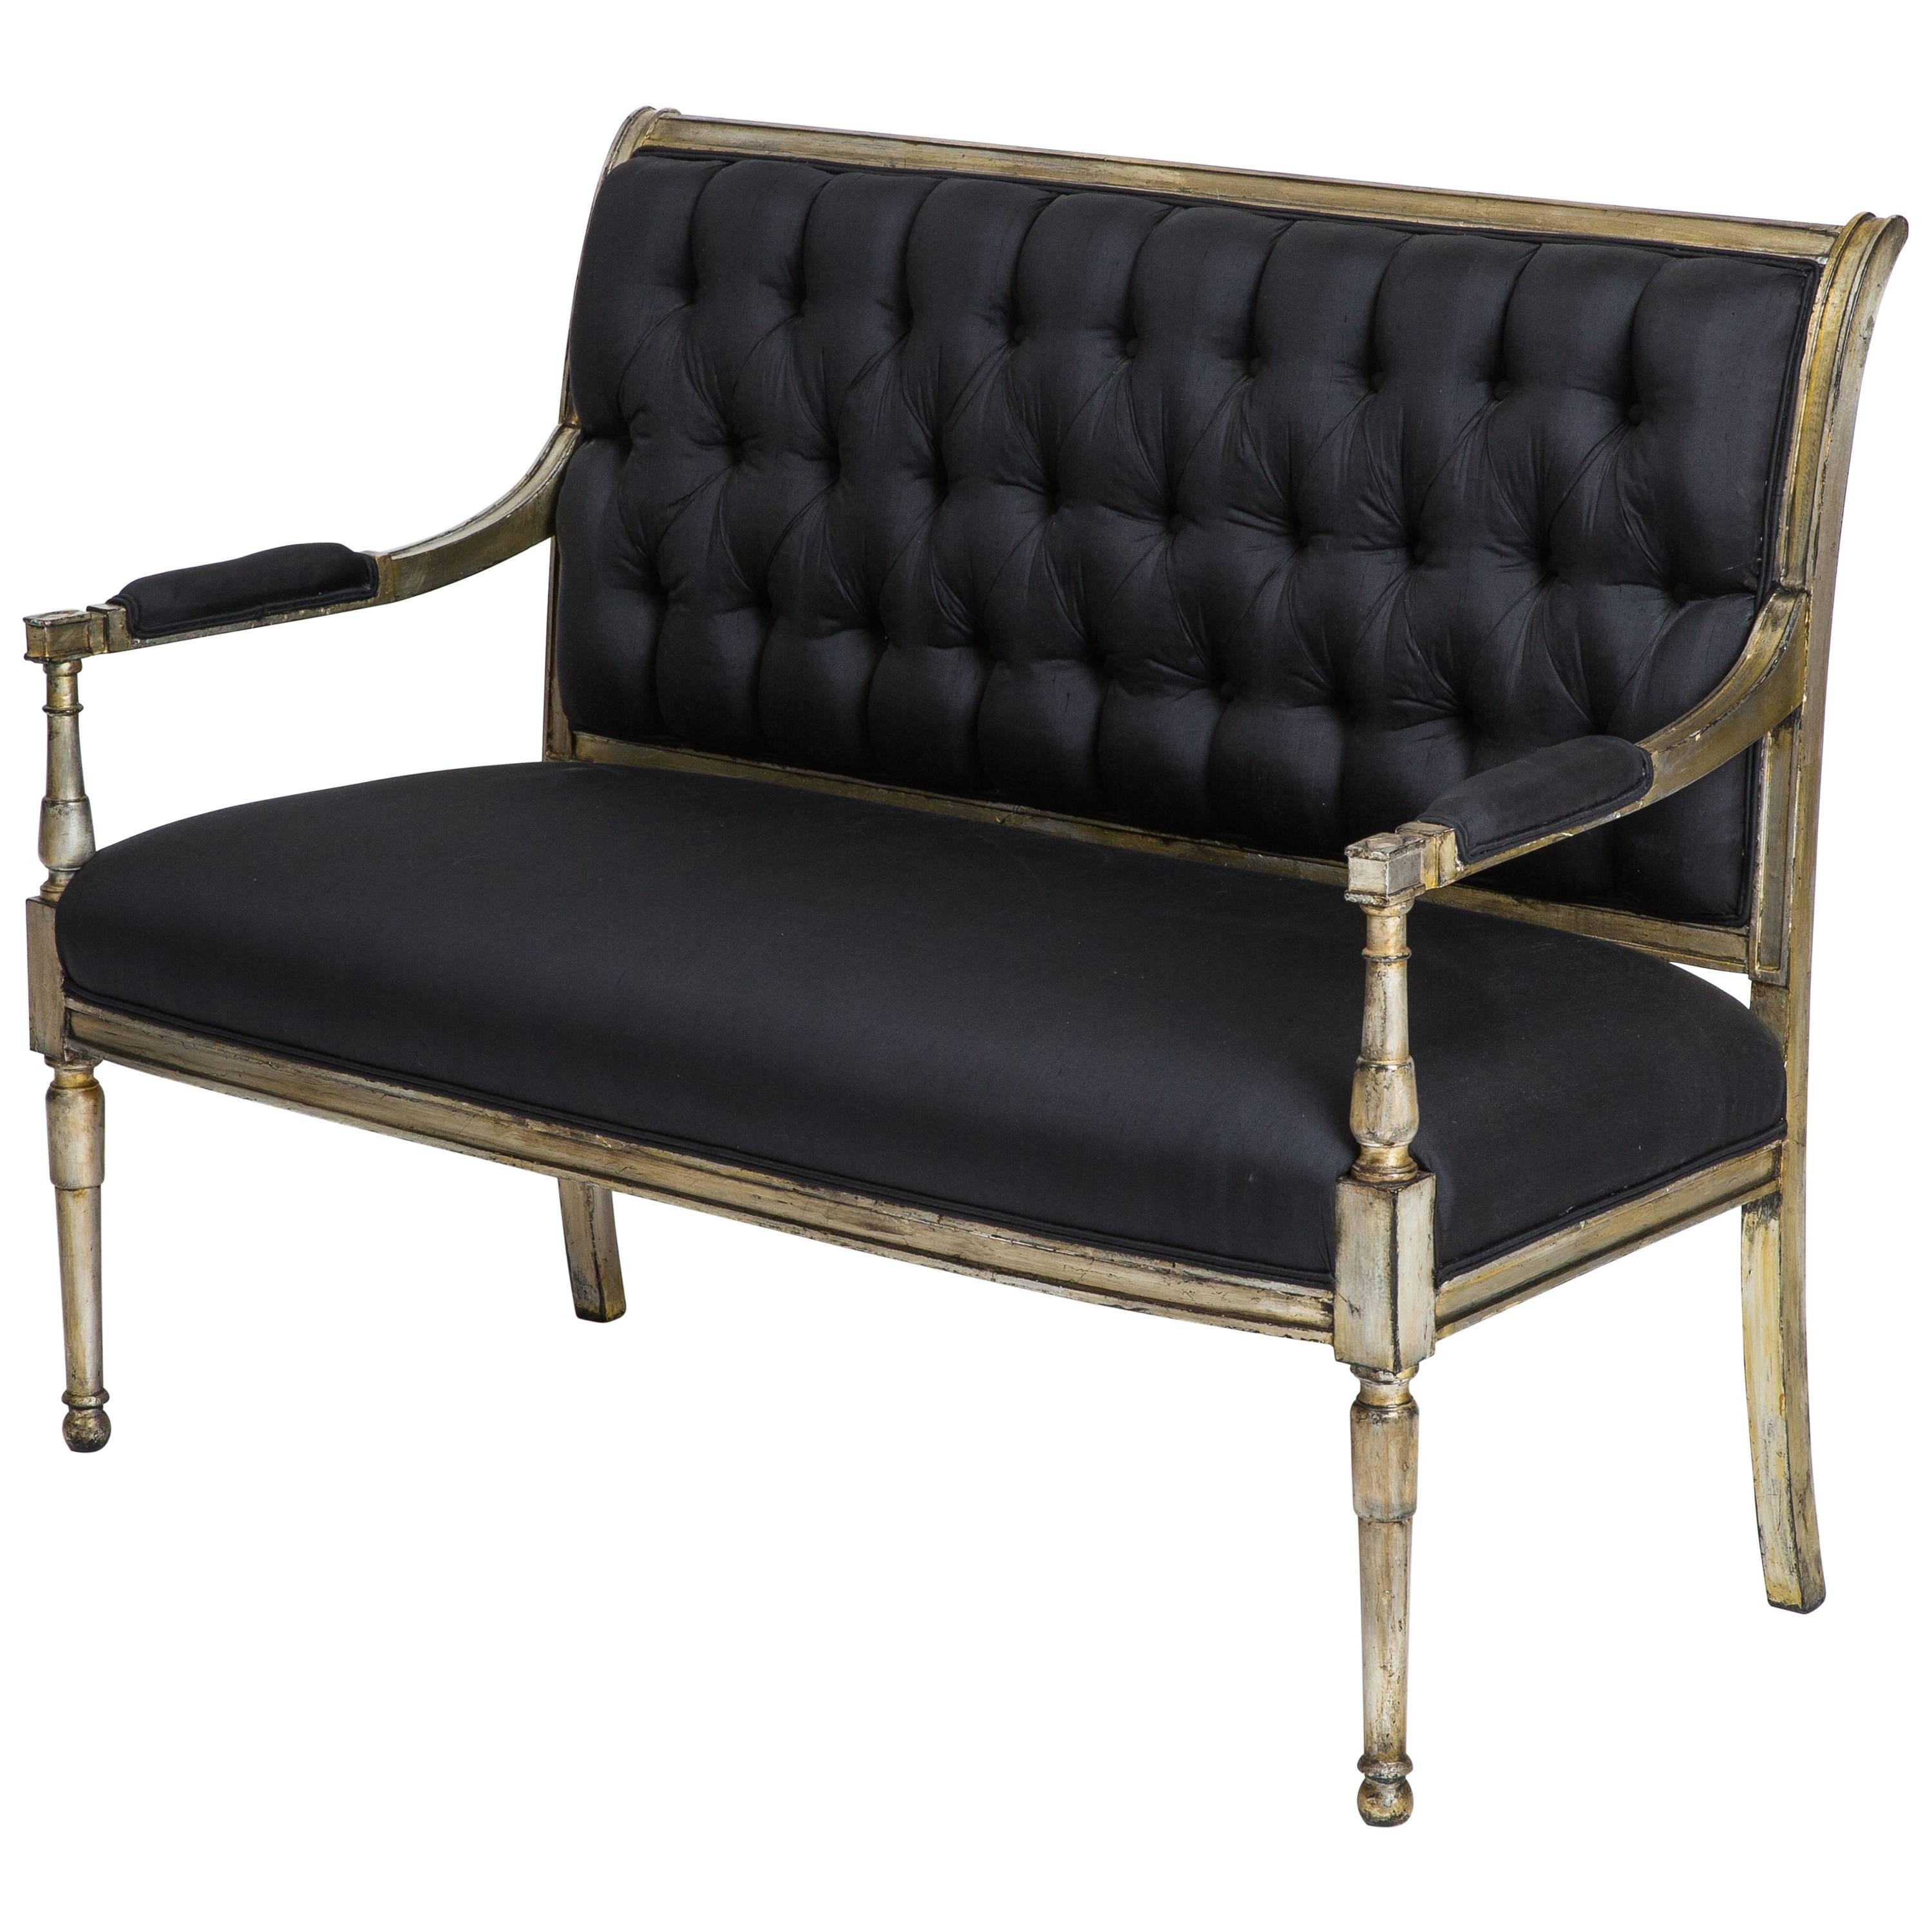 Maison Jansen Seltenes gestempeltes Blattsilber Sofa in schwarzer Rohseide